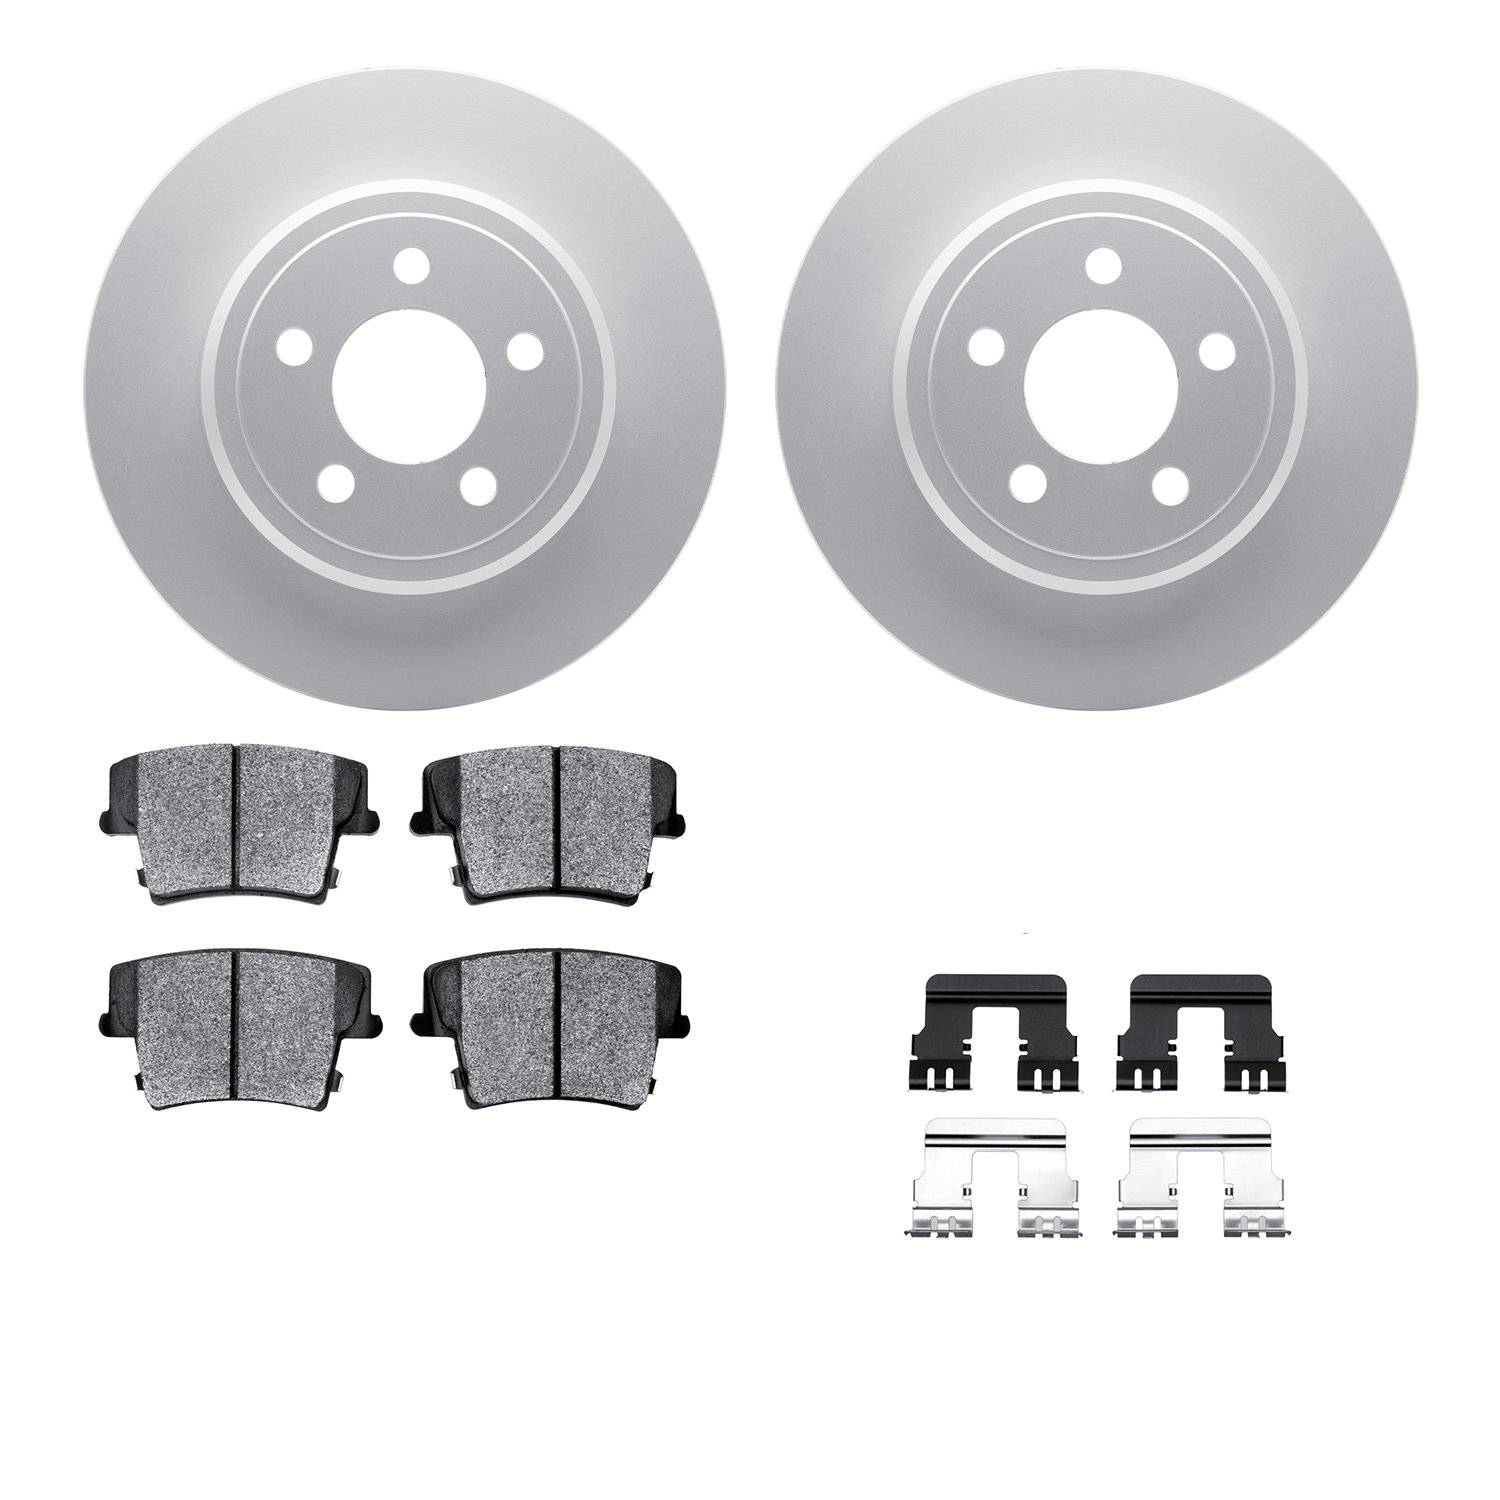 4212-39041 Geospec Brake Rotors w/Heavy-Duty Brake Pads & Hardware, Fits Select Mopar, Position: Rear